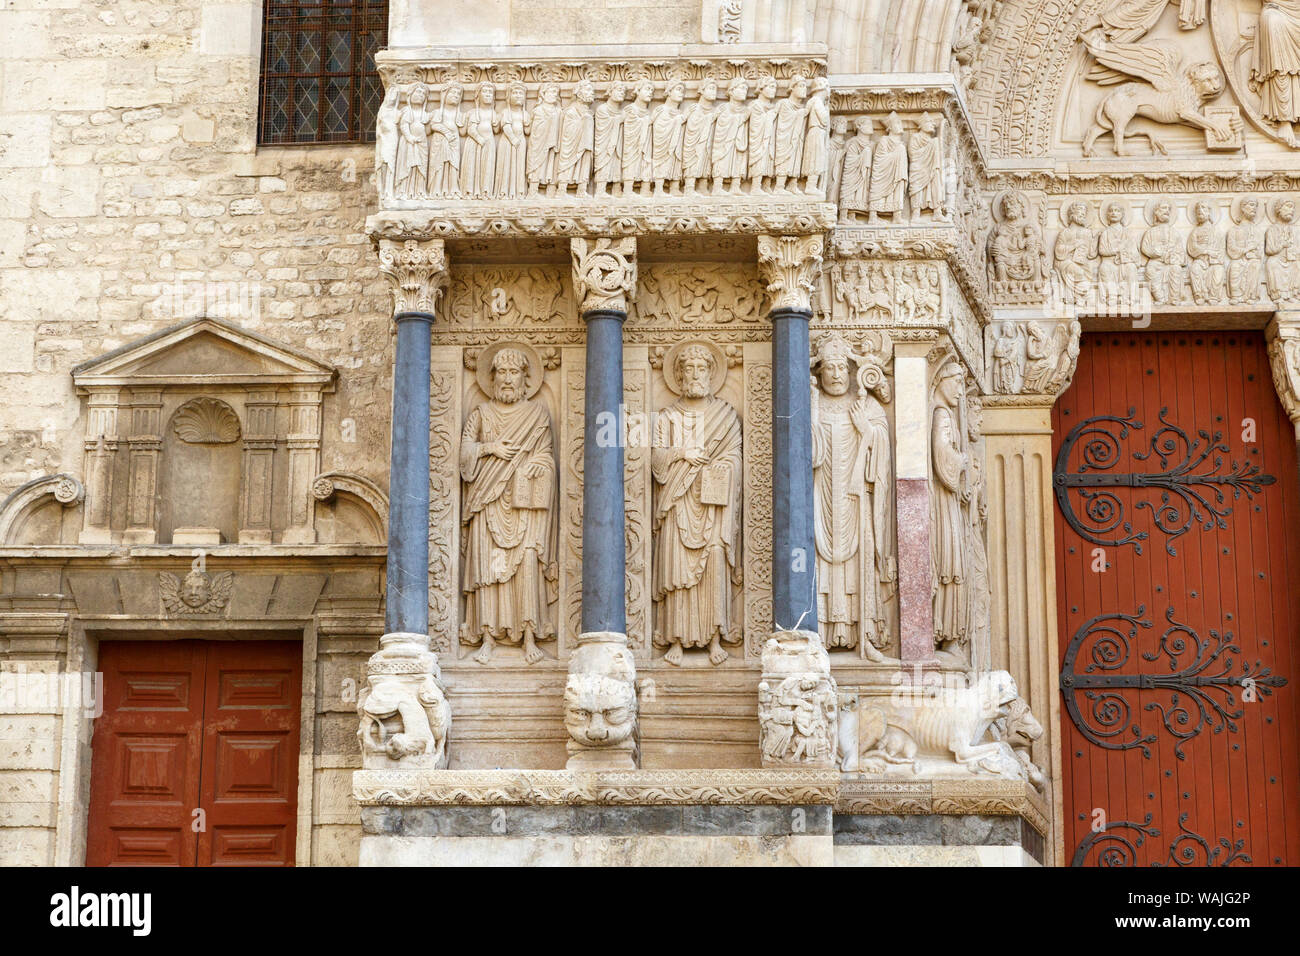 Eglise de Saint Trophime. L'architecture romane du 15ème siècle. Place de la République. Unesco World Heritage Site. Arles, Provence, France. Banque D'Images